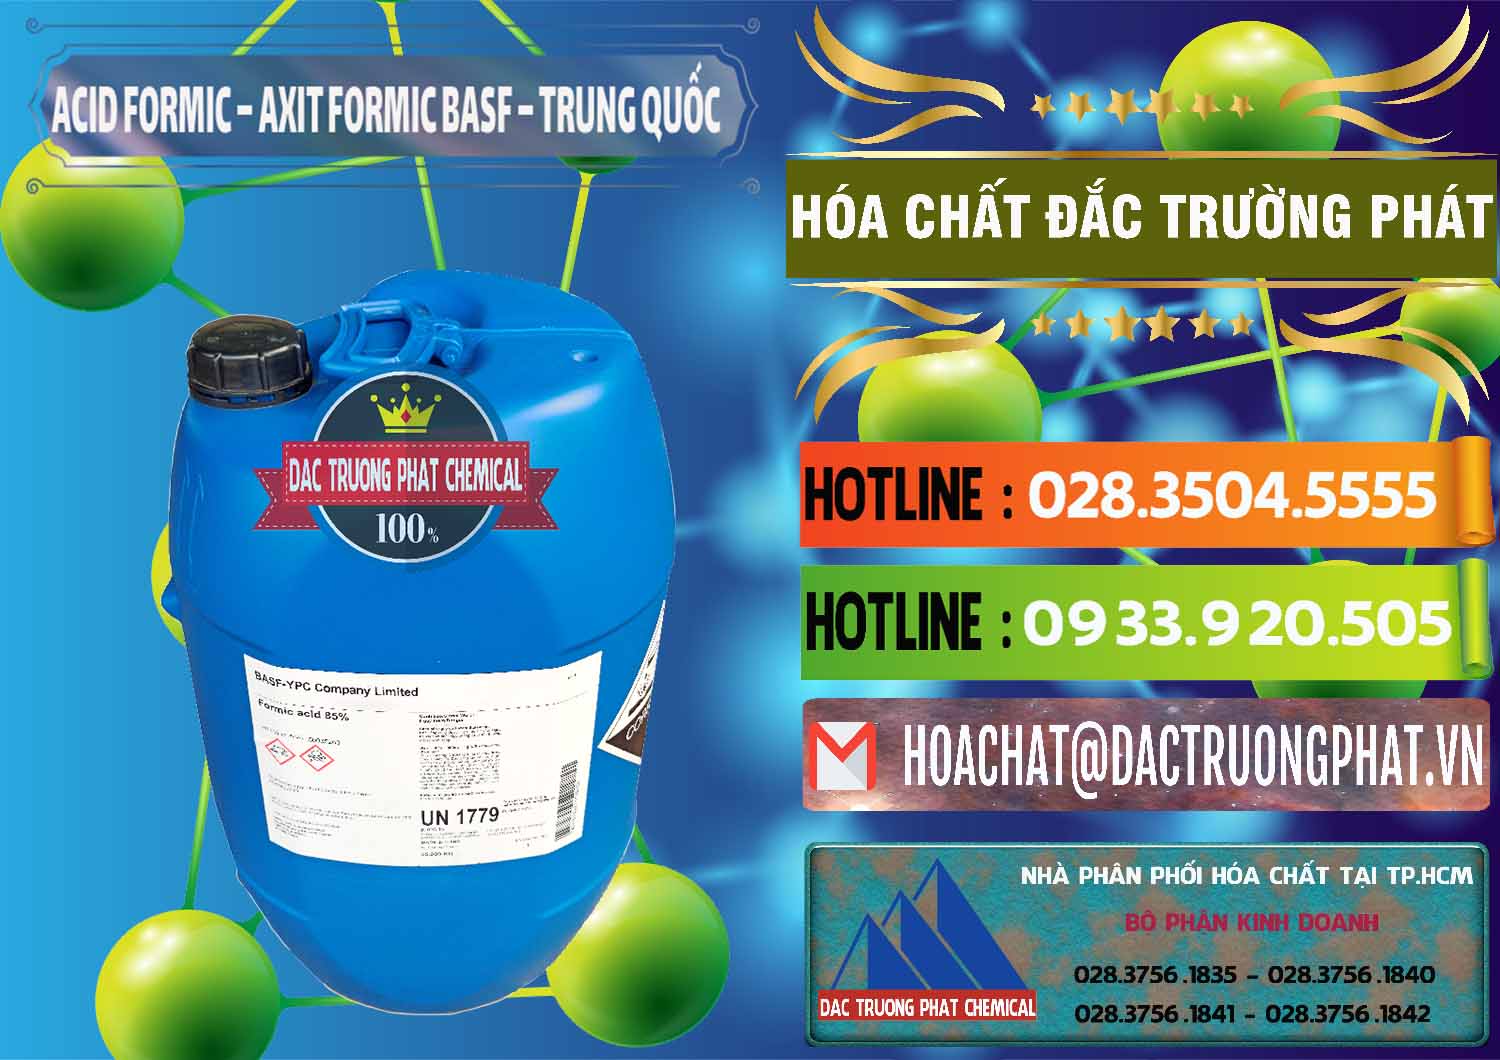 Công ty chuyên kinh doanh và bán Acid Formic - Axit Formic BASF Trung Quốc China - 0025 - Cty chuyên cung cấp và bán hóa chất tại TP.HCM - cungcaphoachat.com.vn